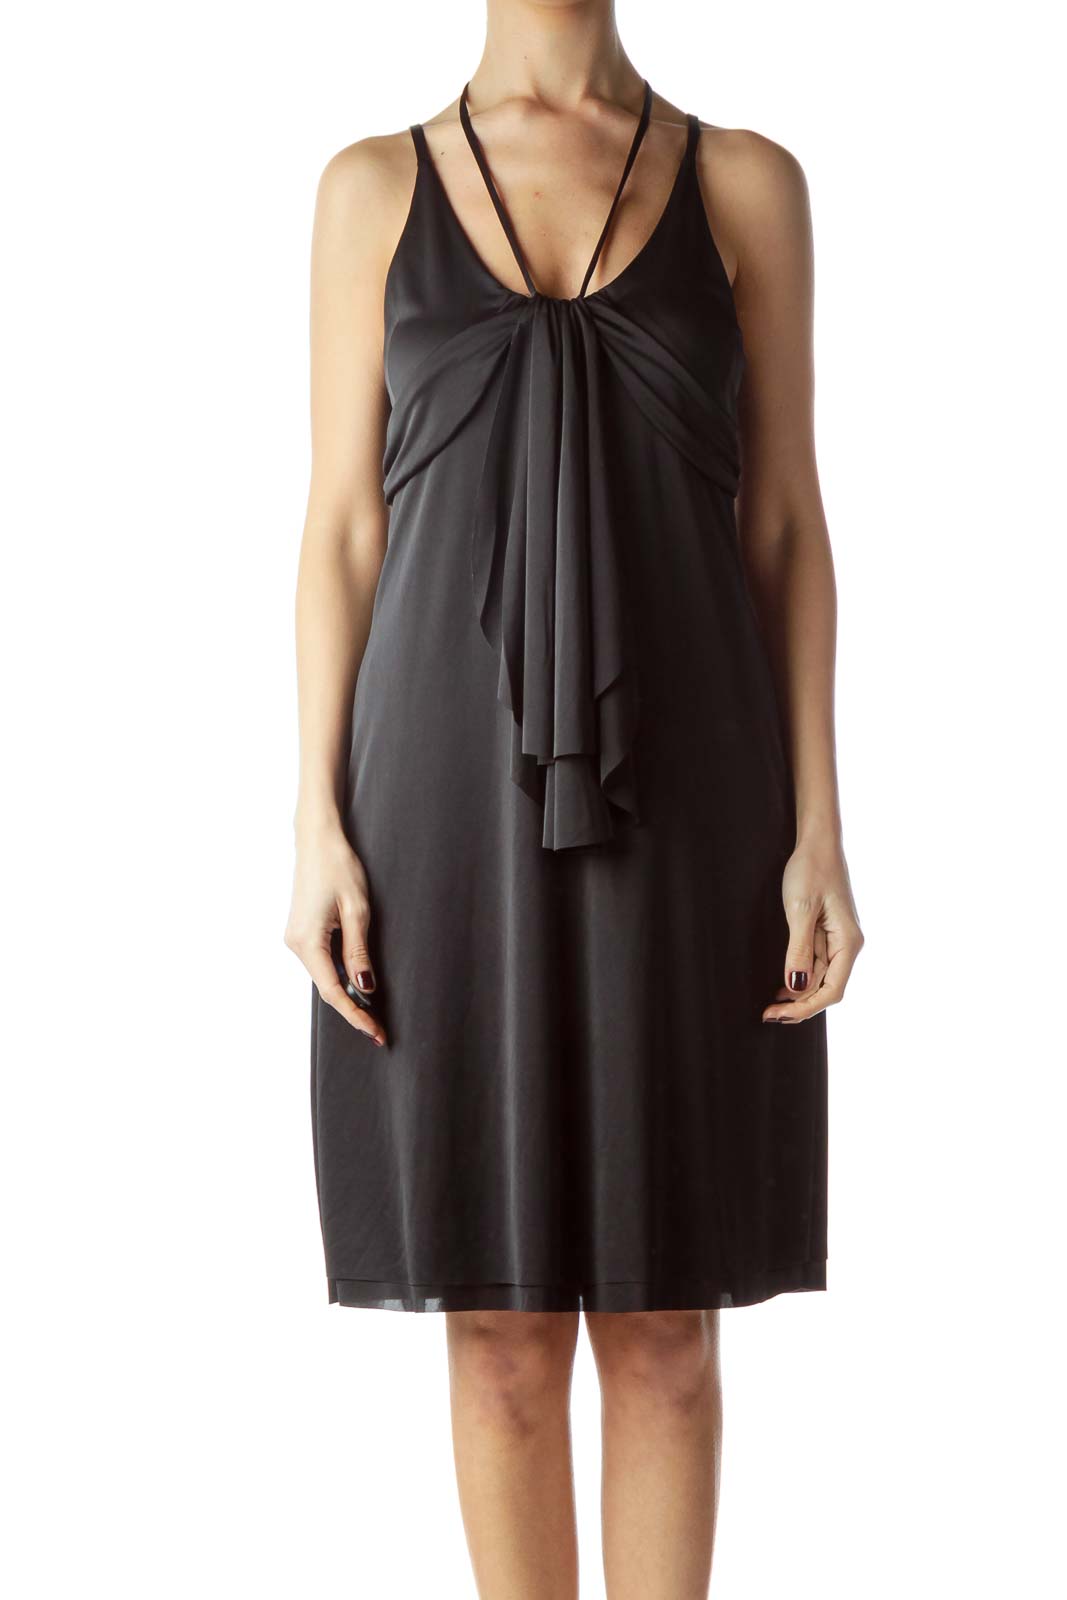 Black Adjustable Straps Shift Shiny Dress Front